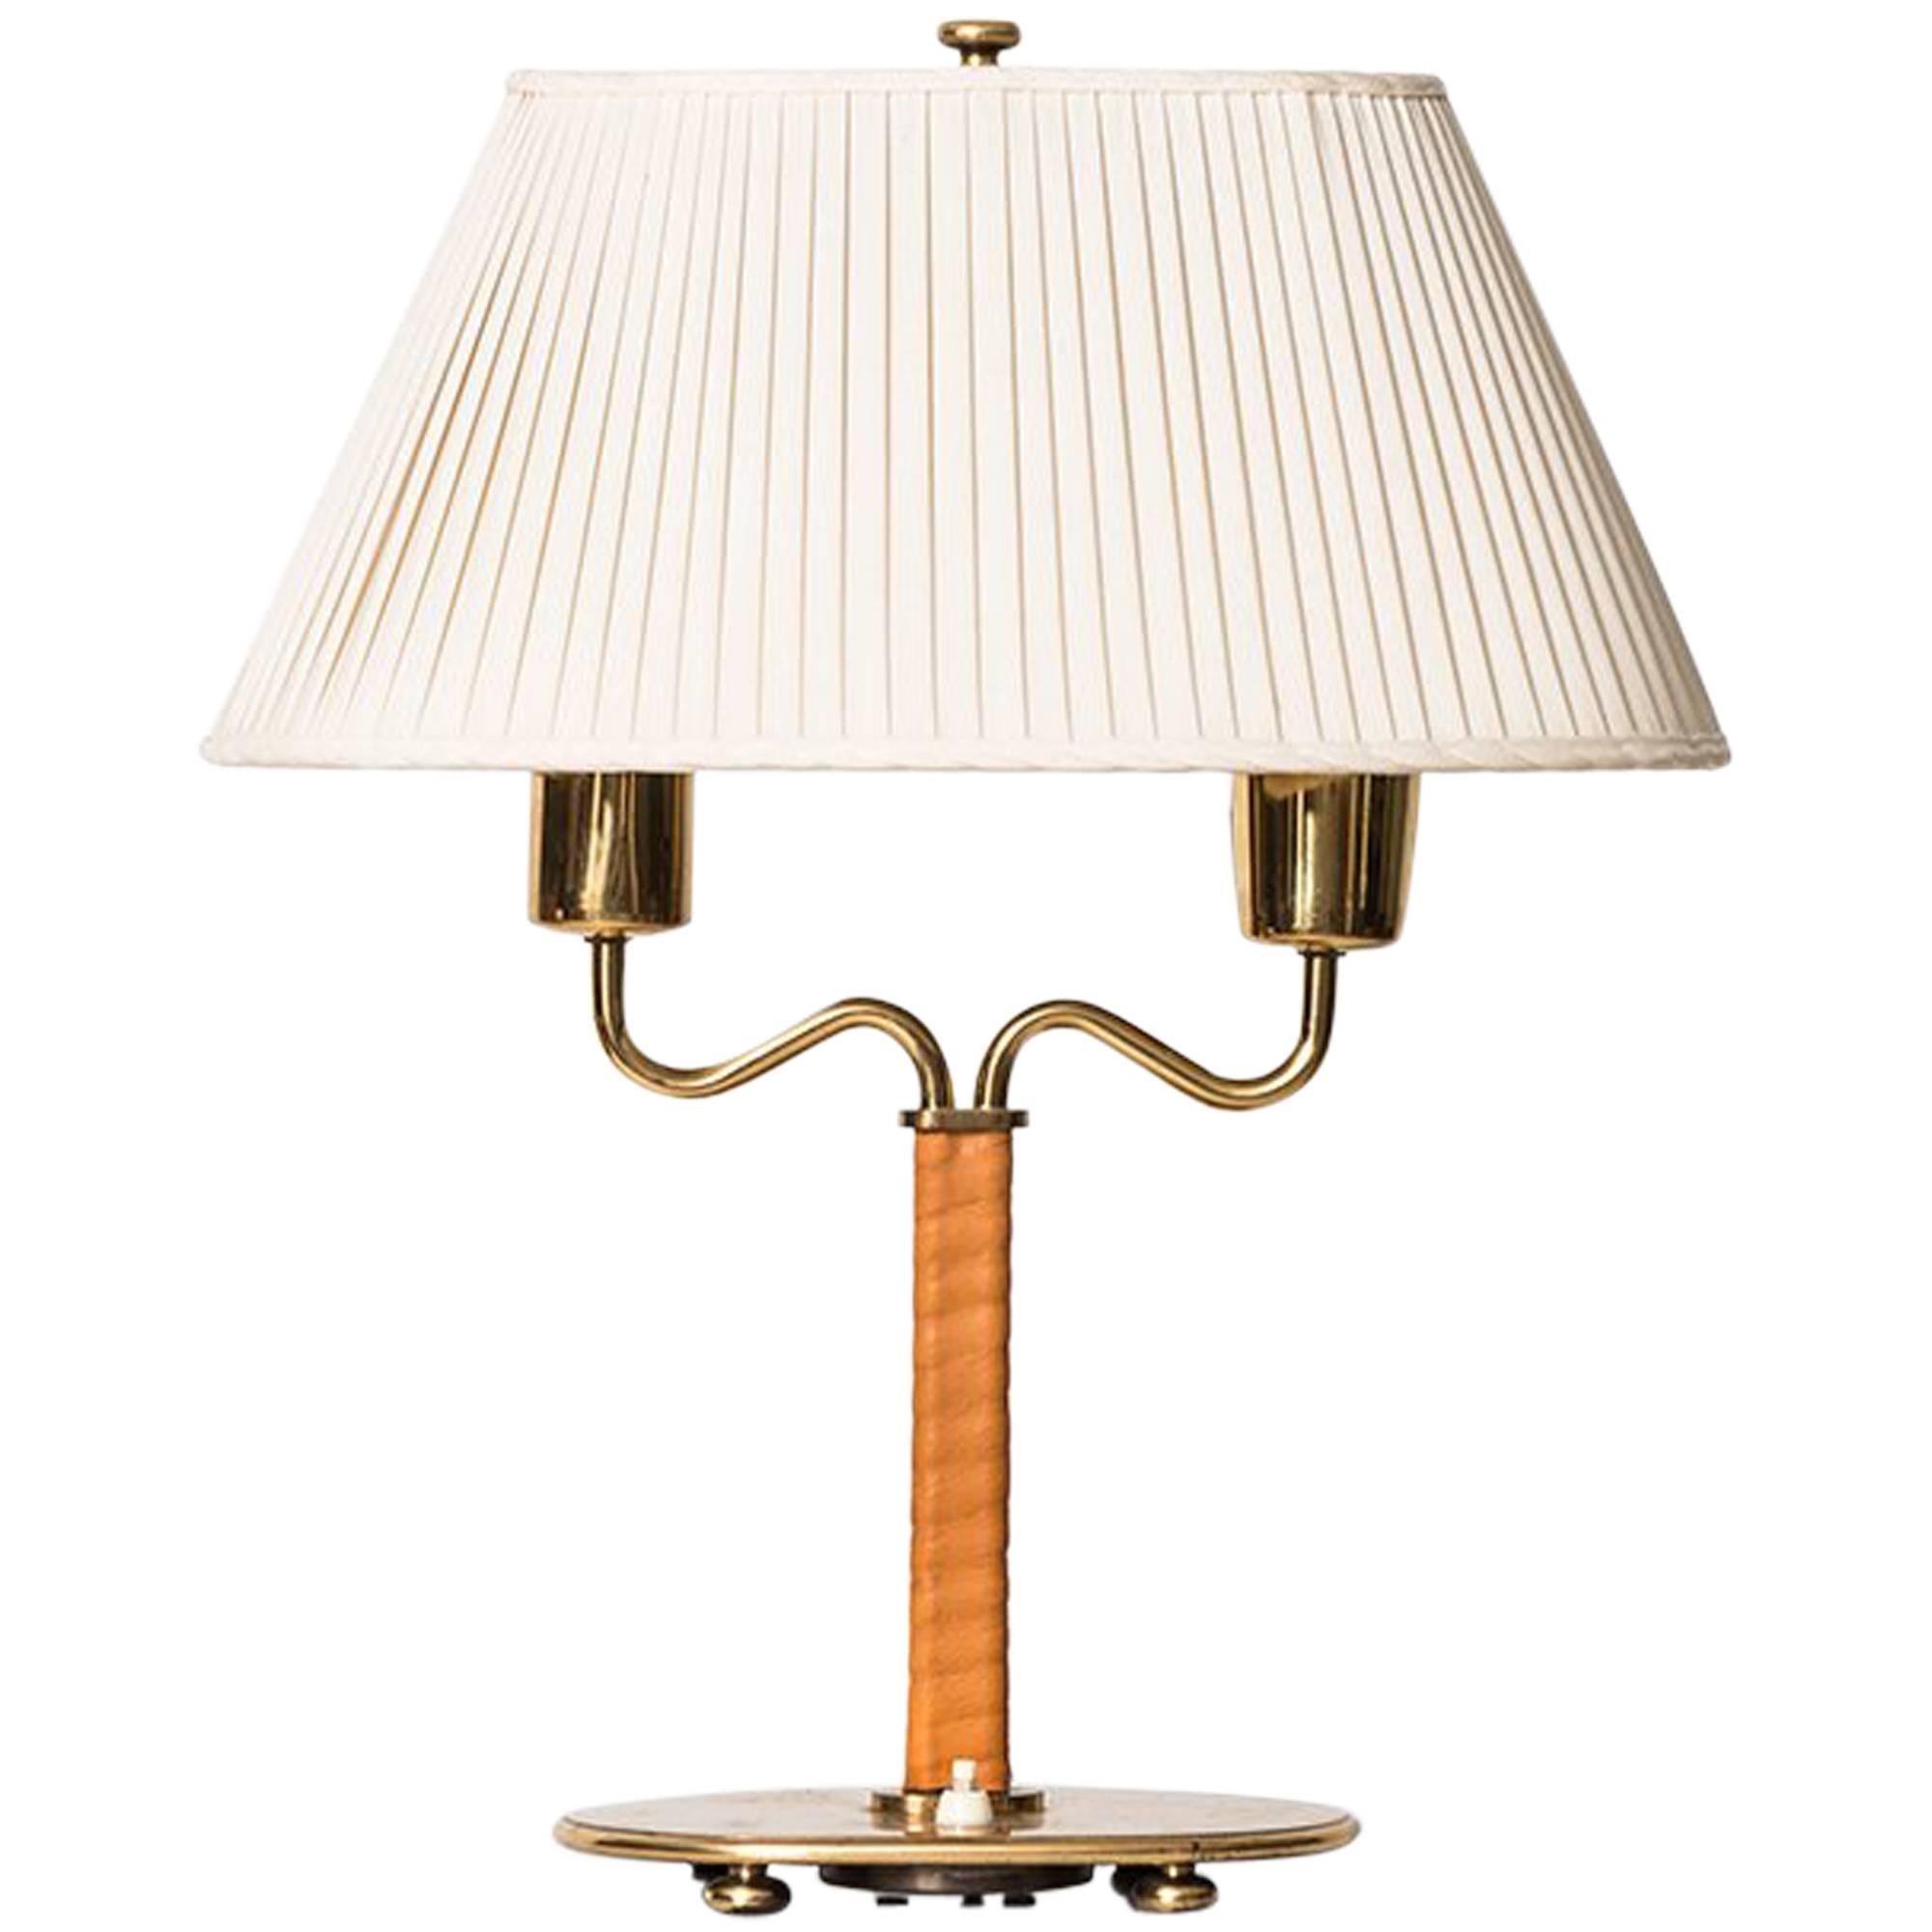 Josef Frank Table Lamp Model 2388 by Svenskt Tenn in Sweden